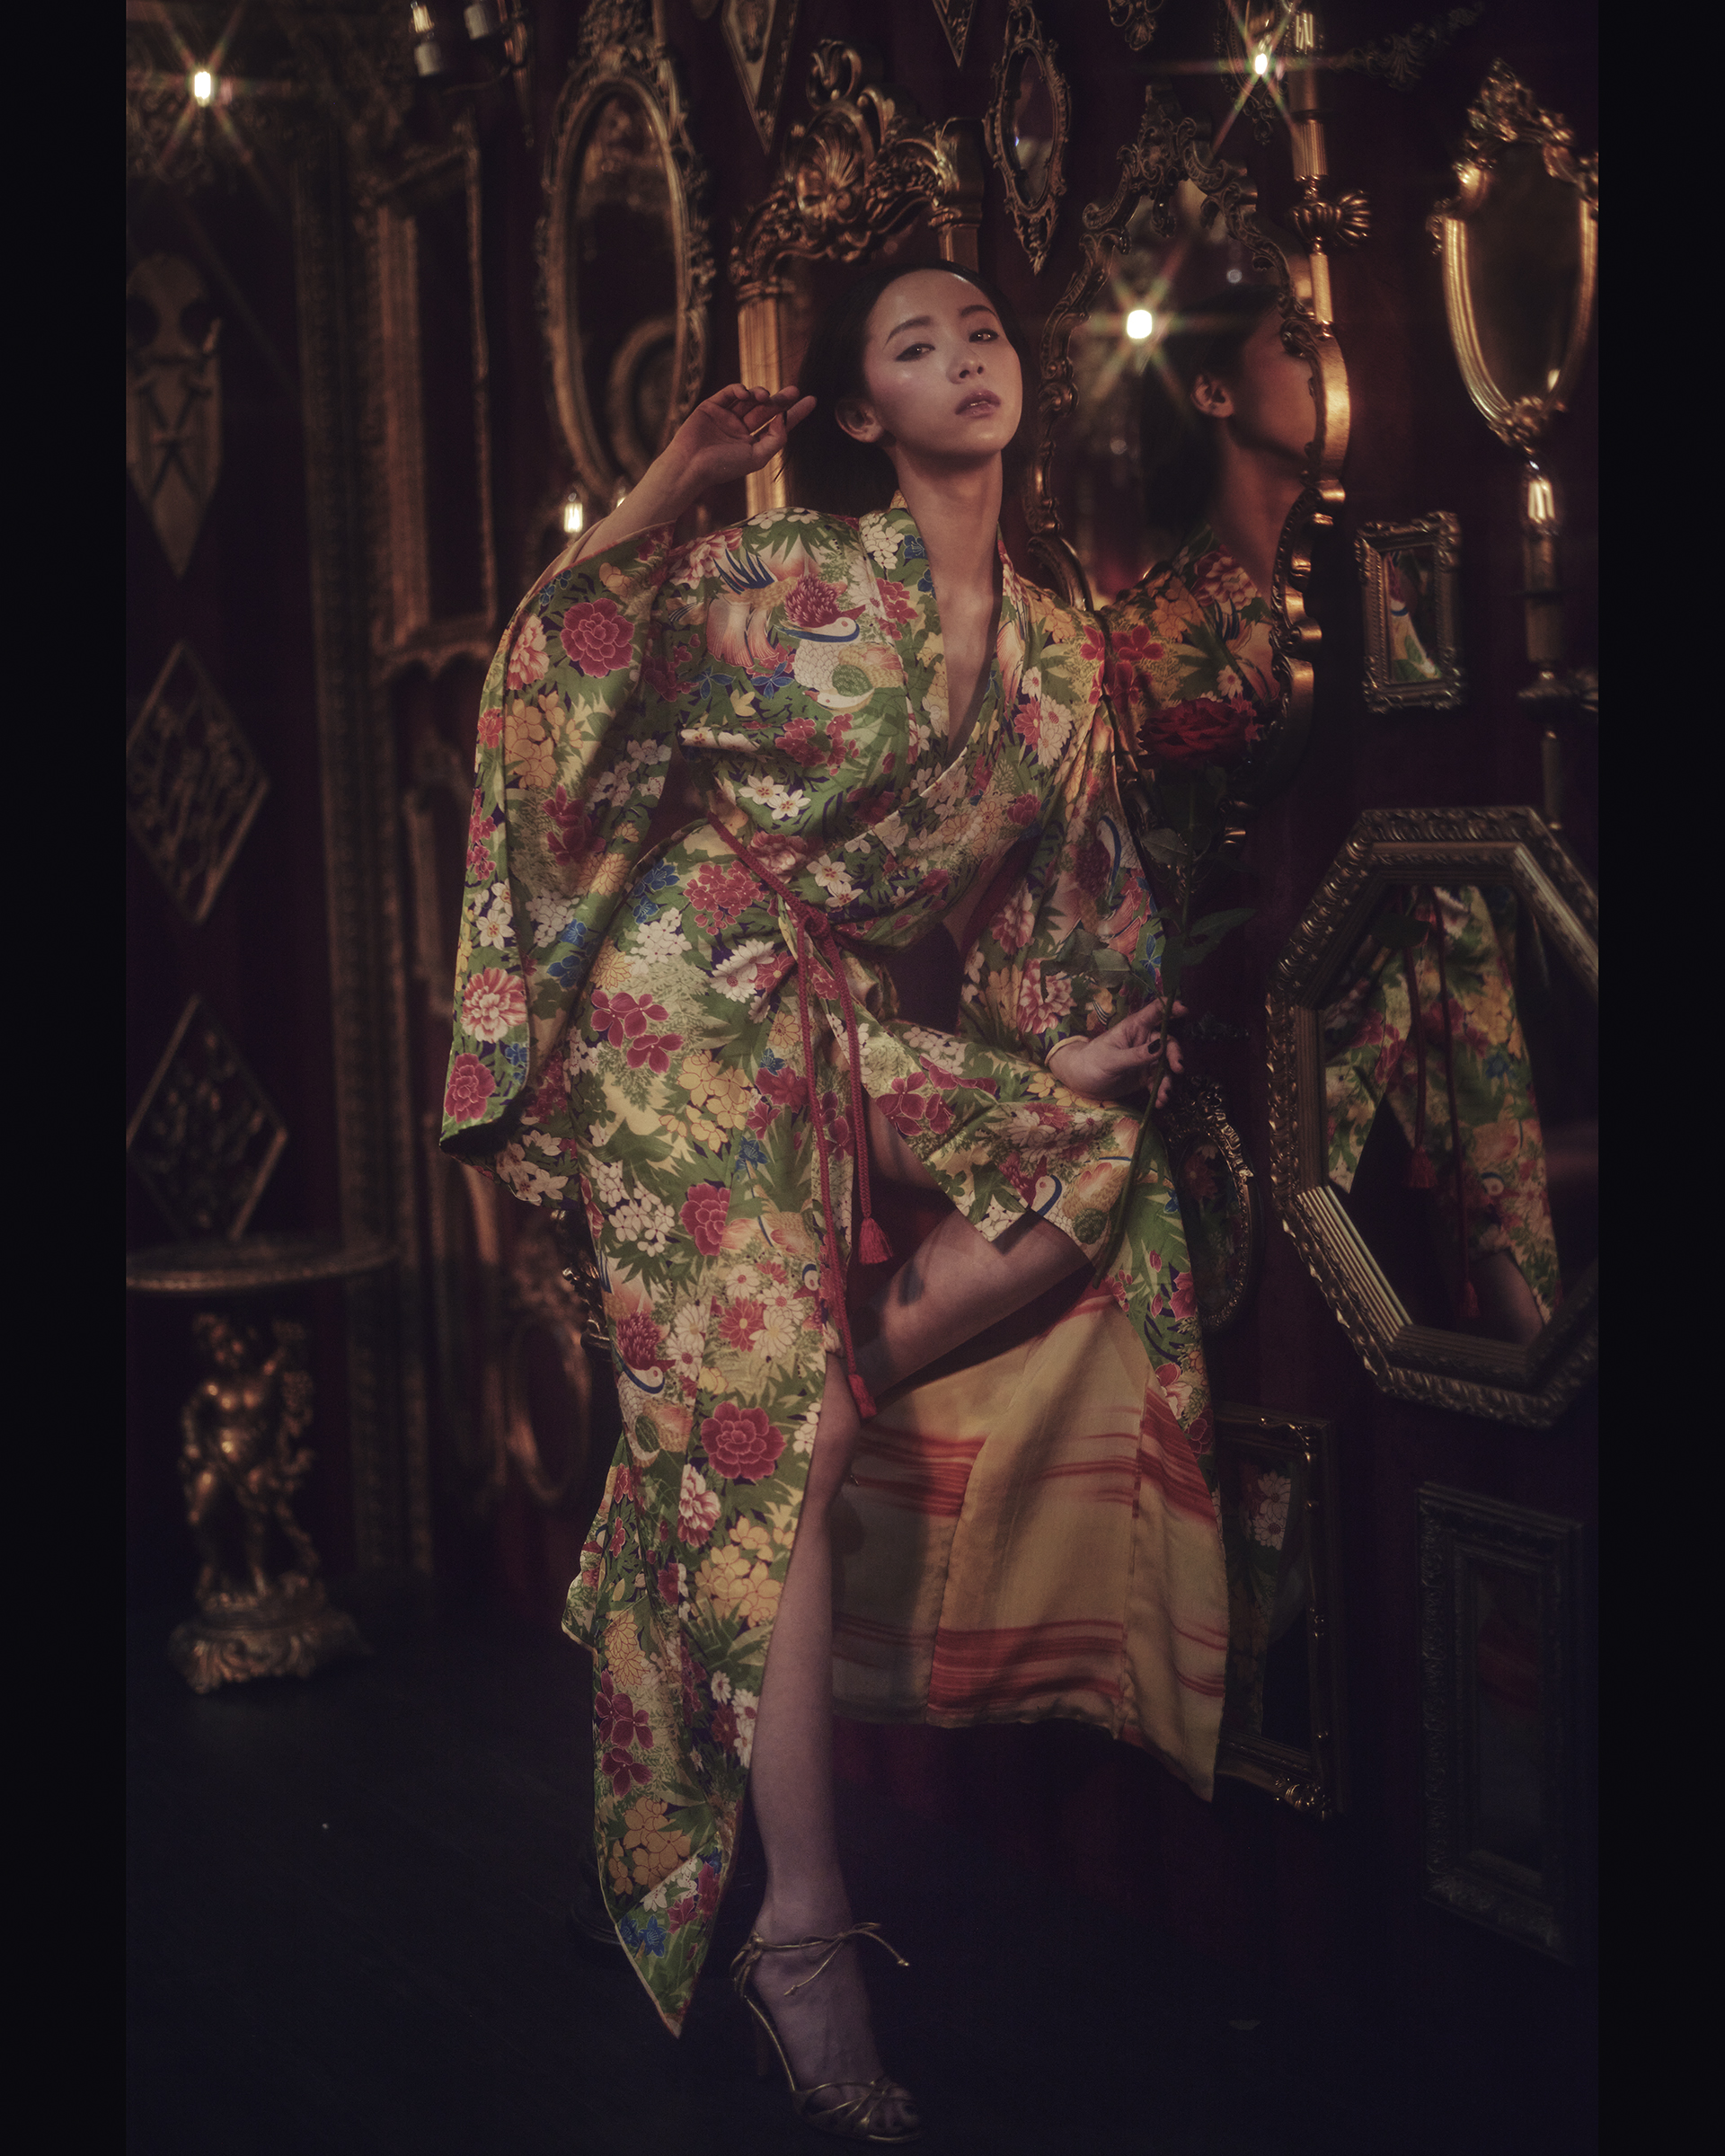 Based in Japan: Kapuki Kimono